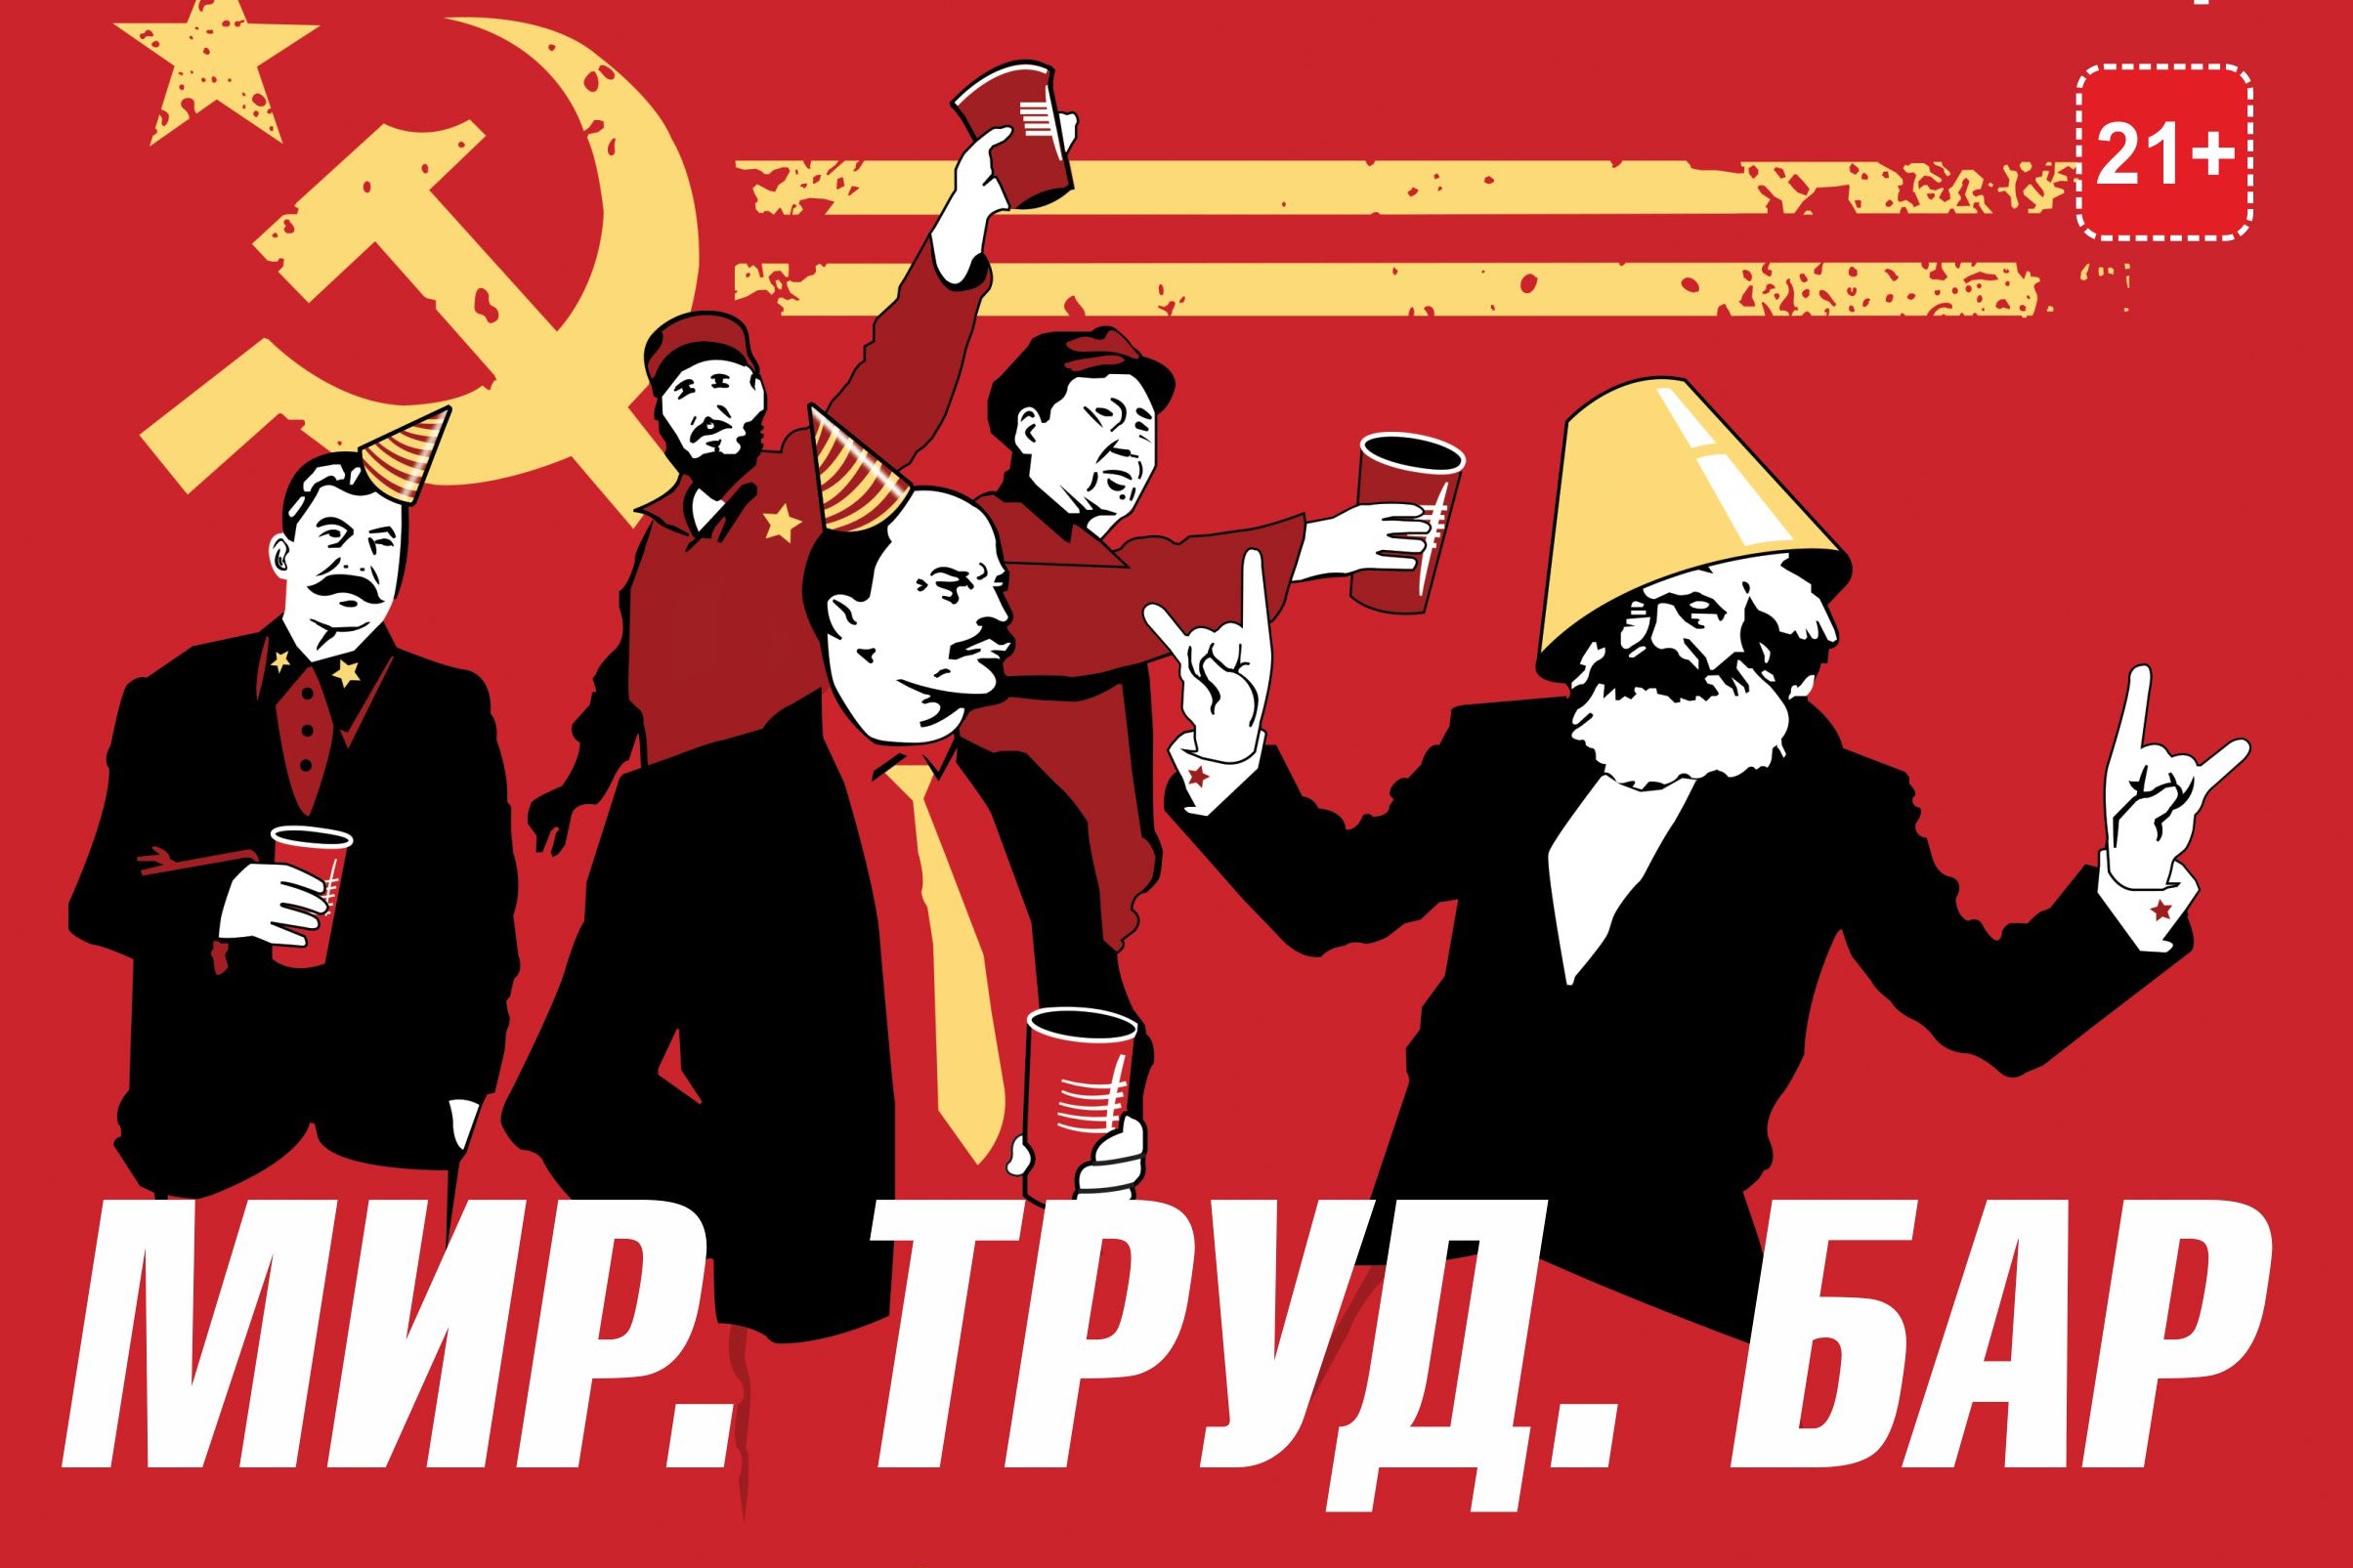 Мир труд май Ленин